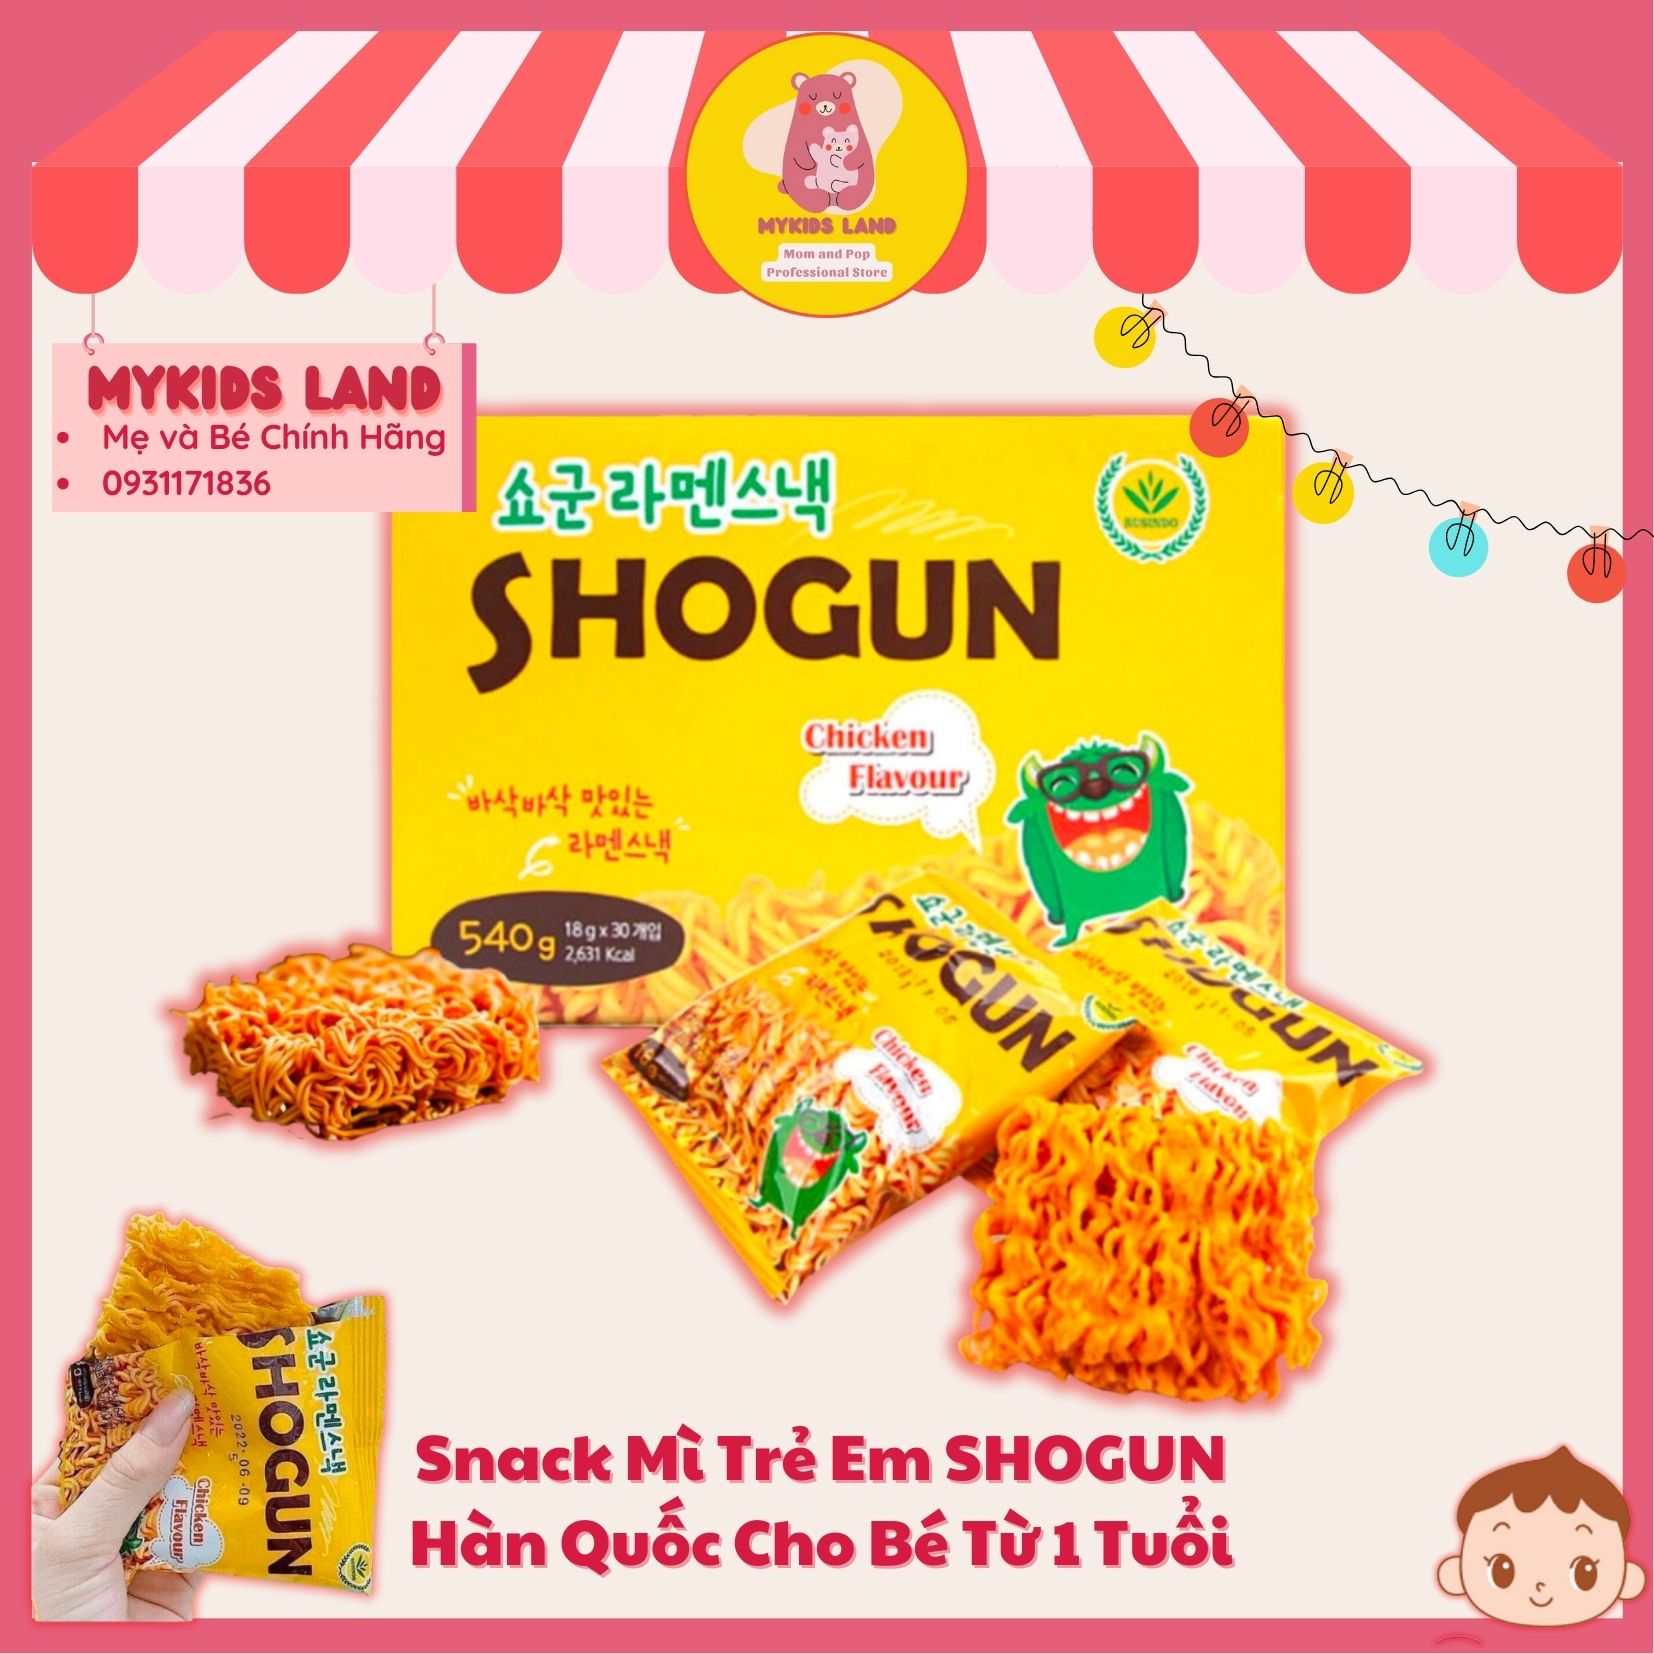 DATE T5.2024 Snack Mì Tôm Trẻ Em Ăn Liền SHOGUN Hàn Quốc Vị Gà Gói Lẻ 18g